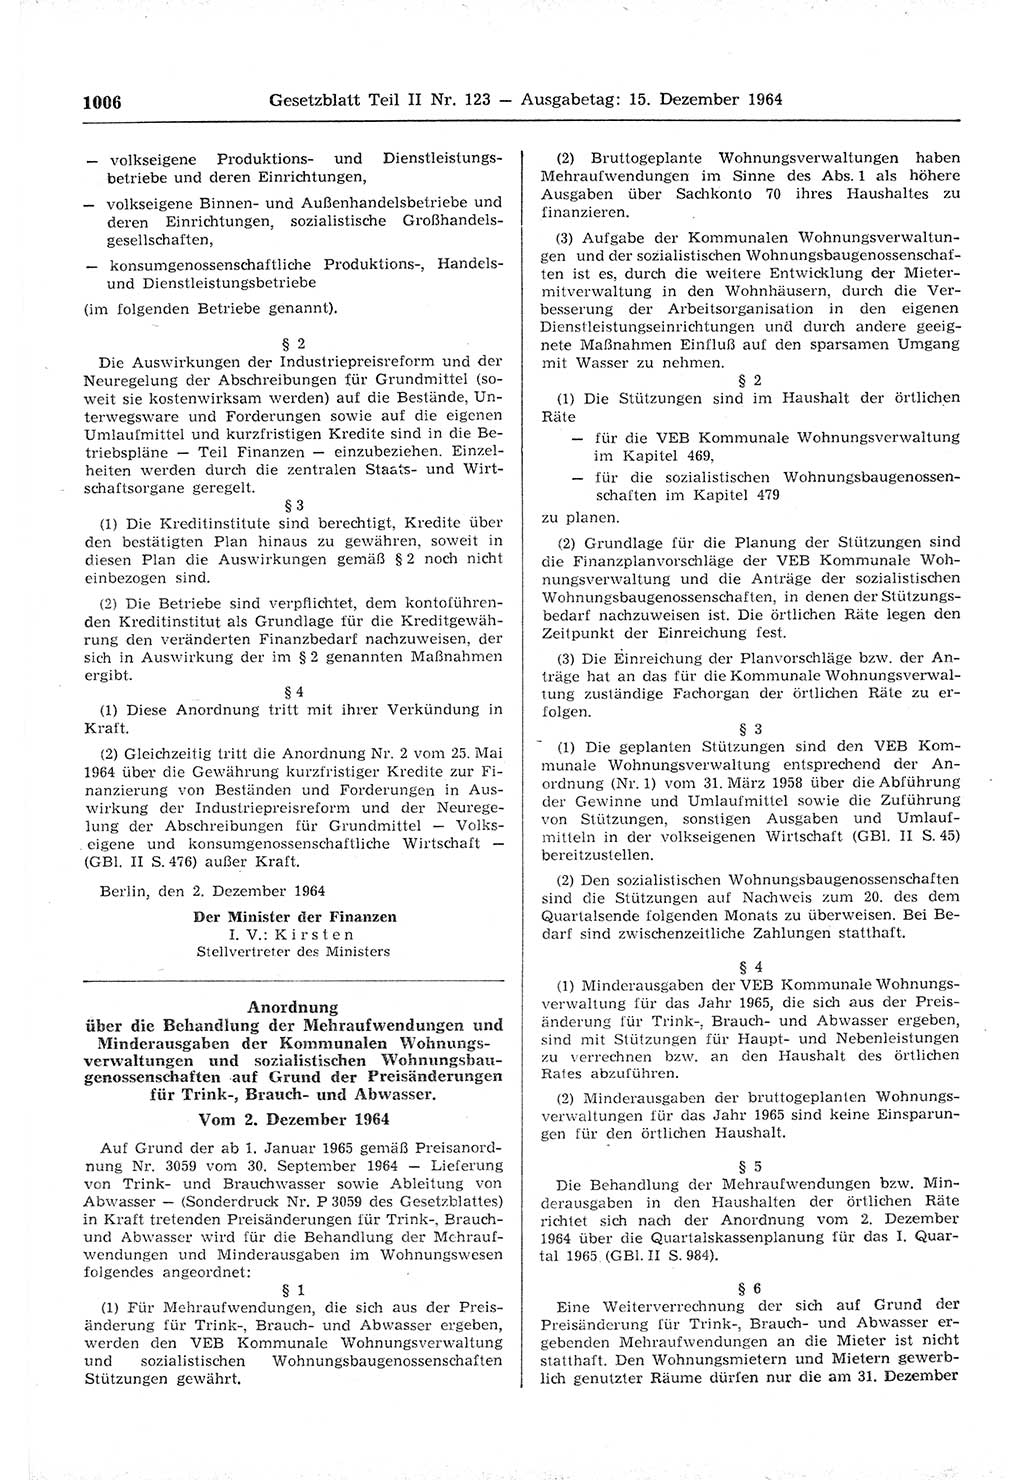 Gesetzblatt (GBl.) der Deutschen Demokratischen Republik (DDR) Teil ⅠⅠ 1964, Seite 1006 (GBl. DDR ⅠⅠ 1964, S. 1006)